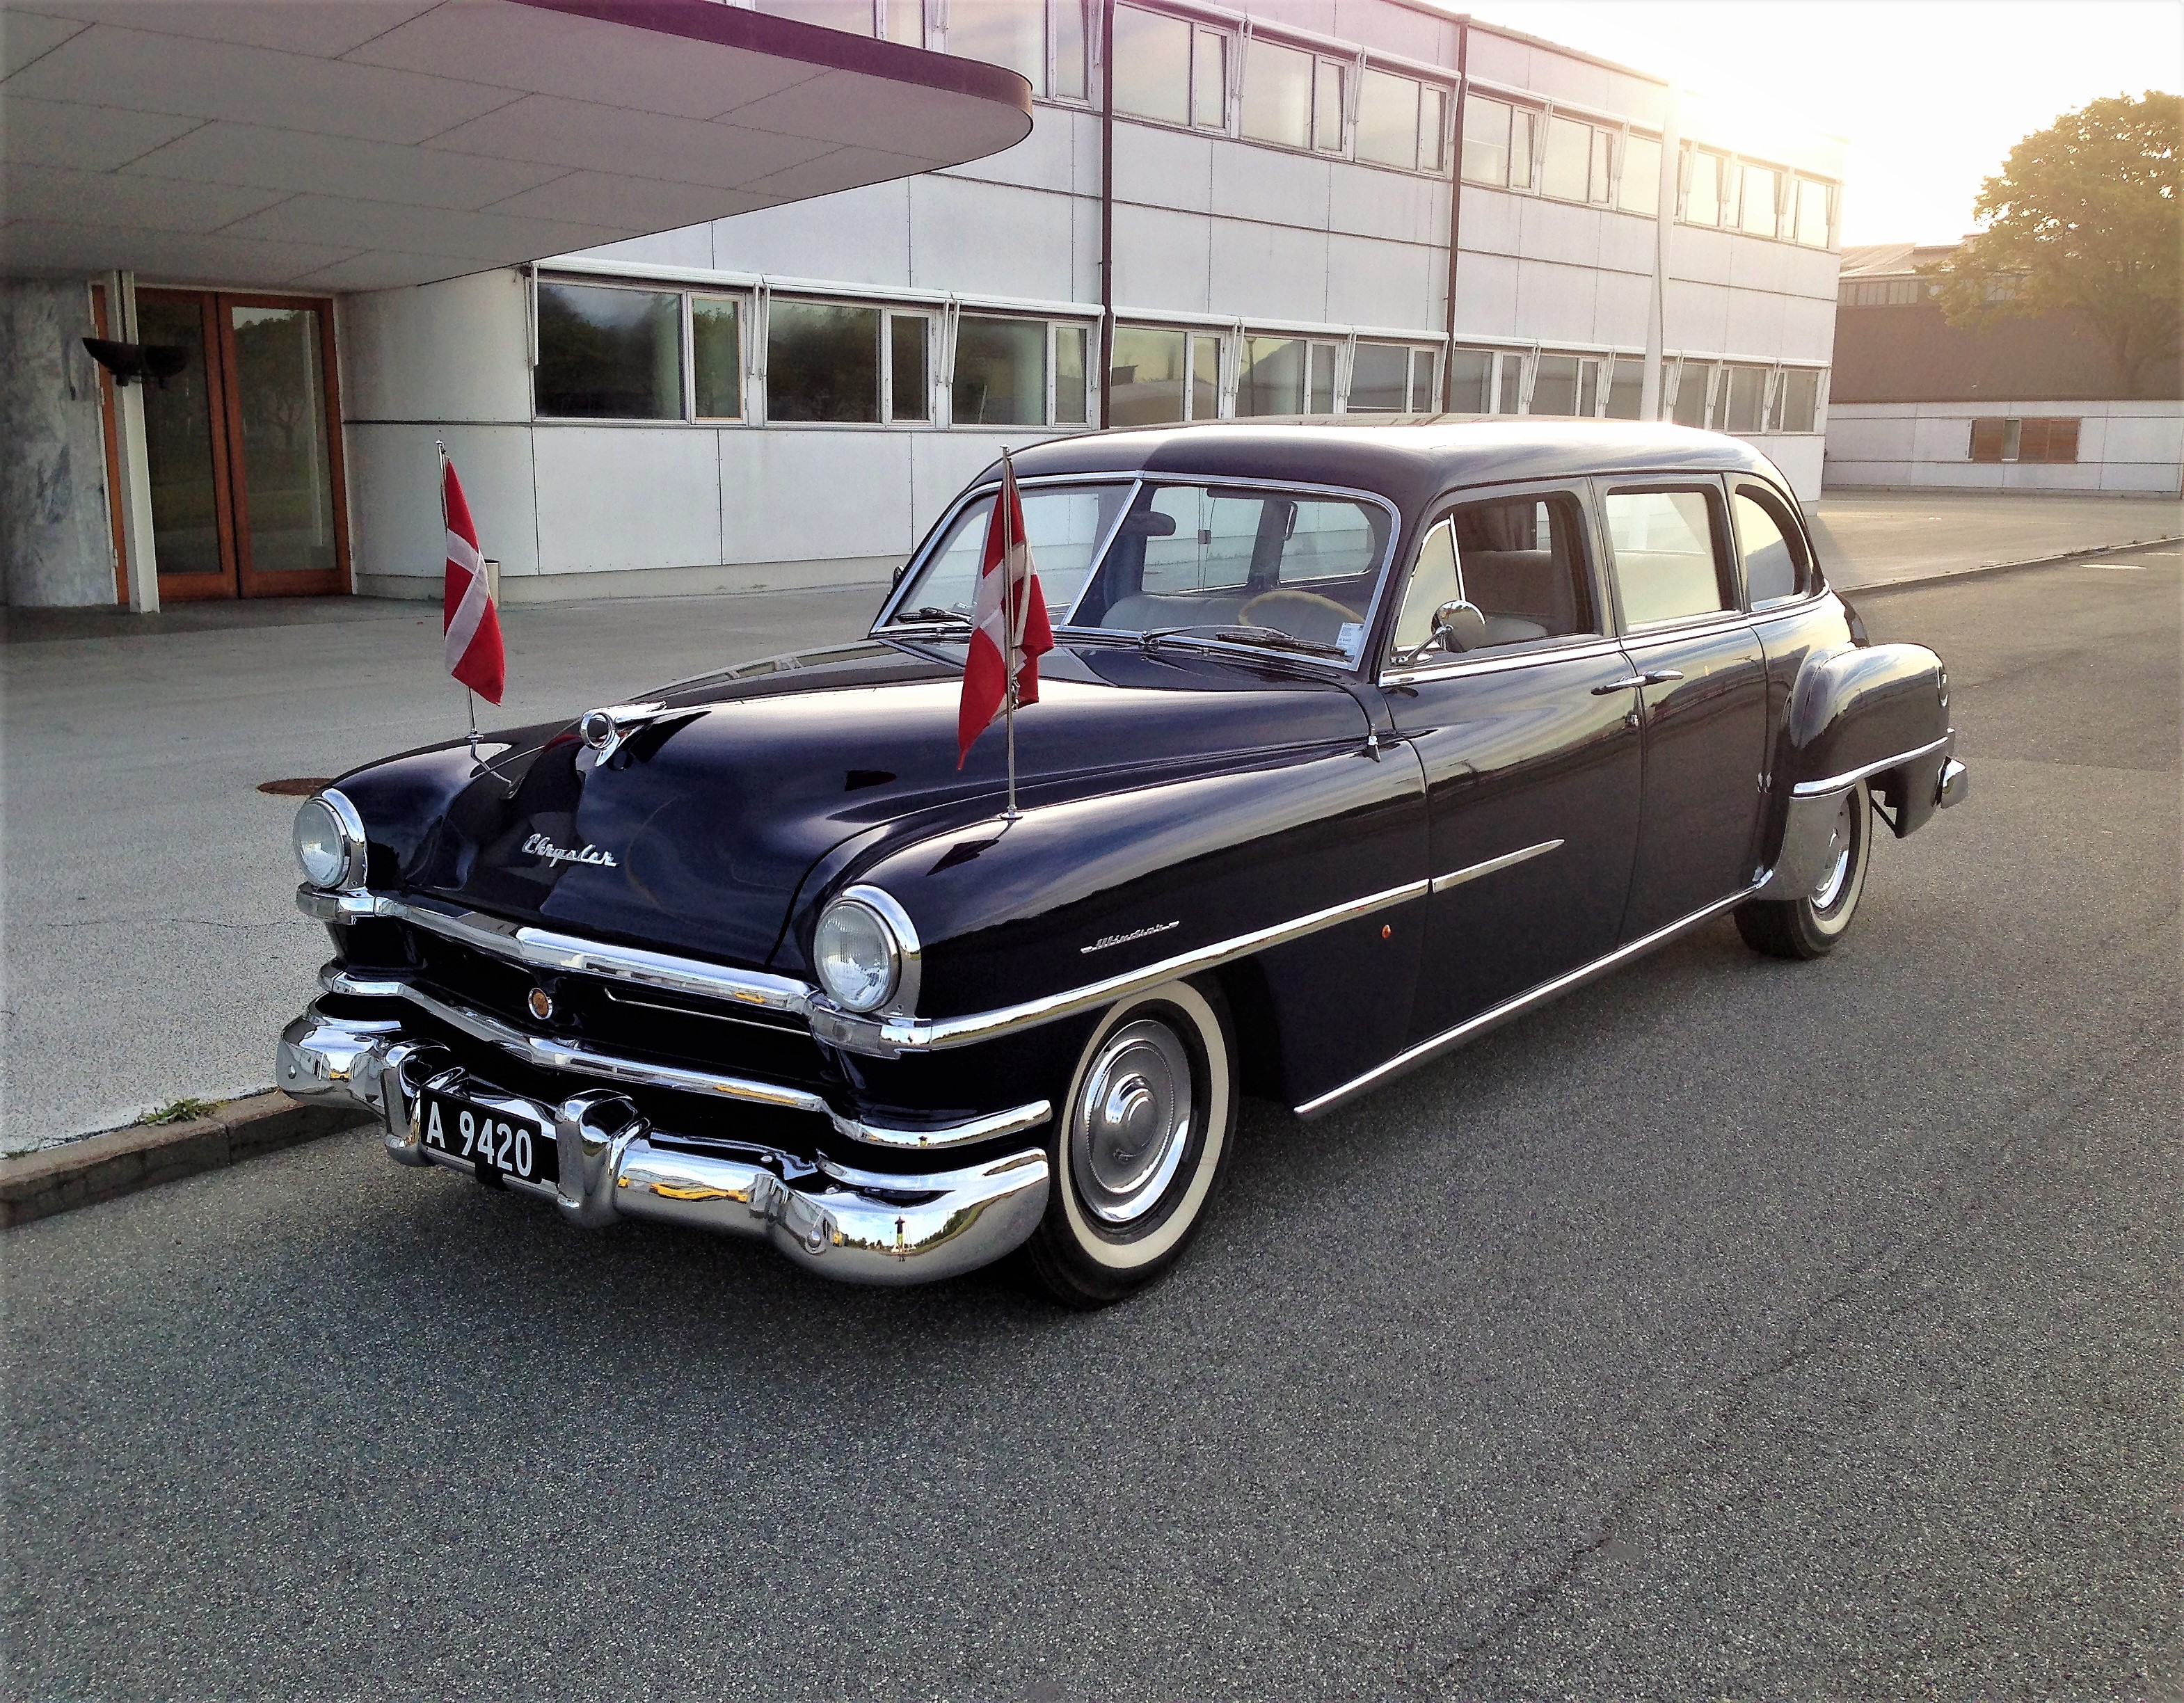 1952 Chrysler Windsor tilhørt Droning Alexandrine